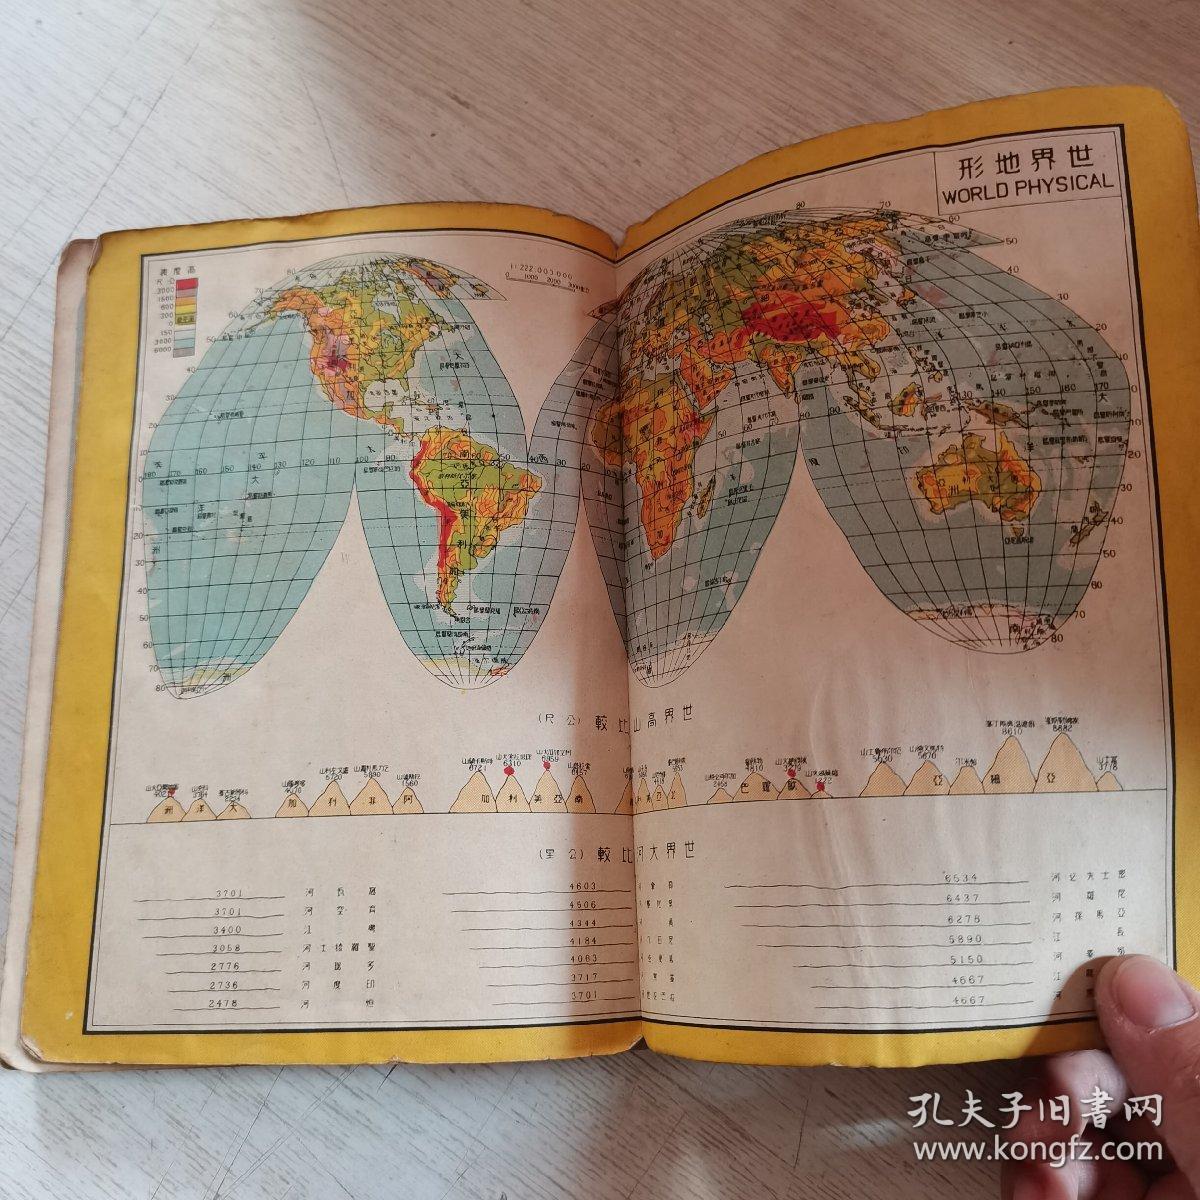 1957年 最新世界分国图 (新光舆地学社)